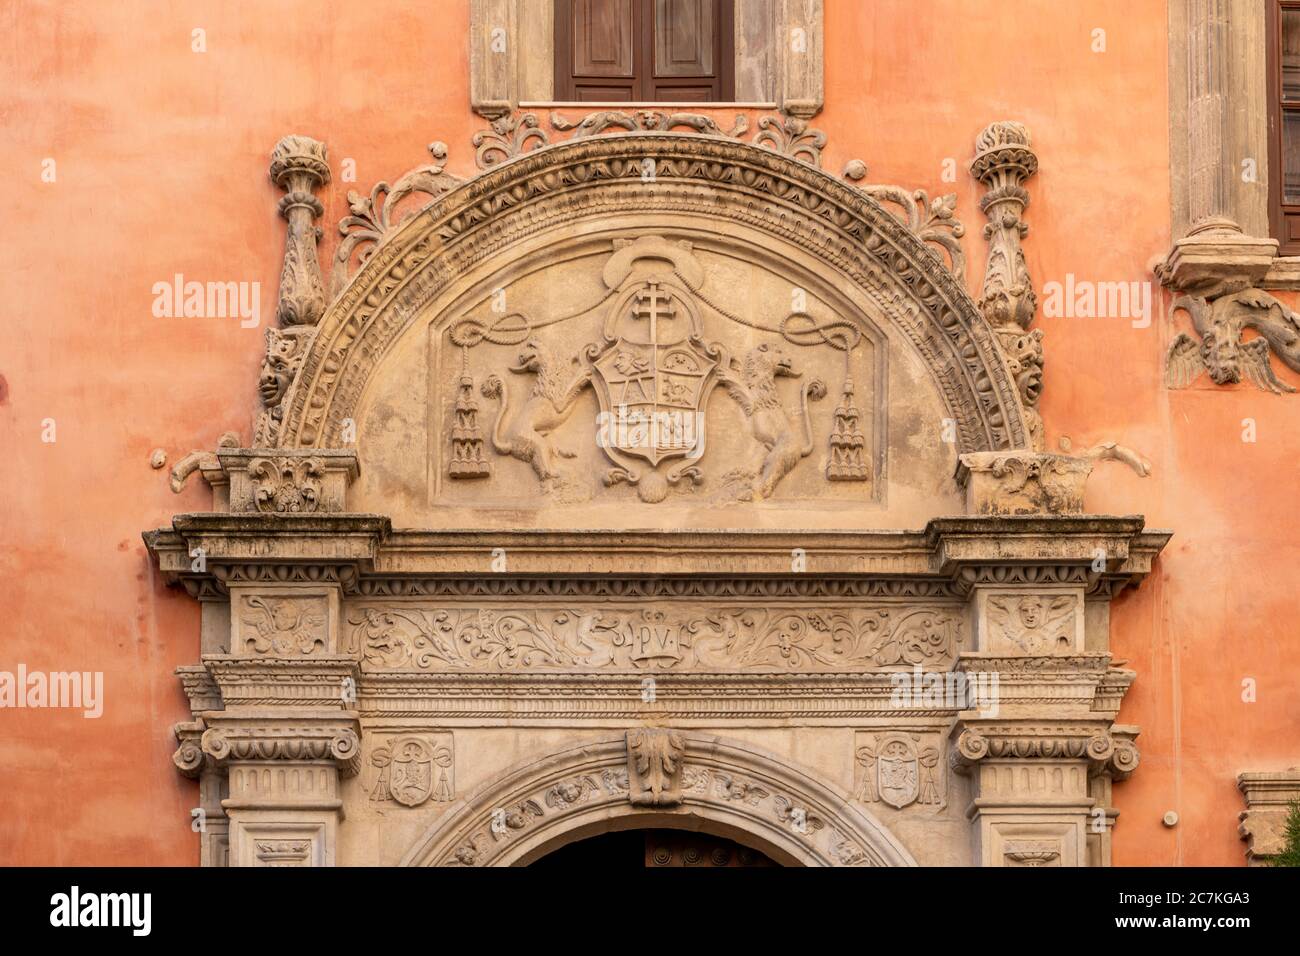 Ein reich verziertes Tor ziert die Fassade der Antigua Universidad Literaria von Diego de Siloé und Juan de Marquina an der Plaza de Alonso Cano in Granada Stockfoto